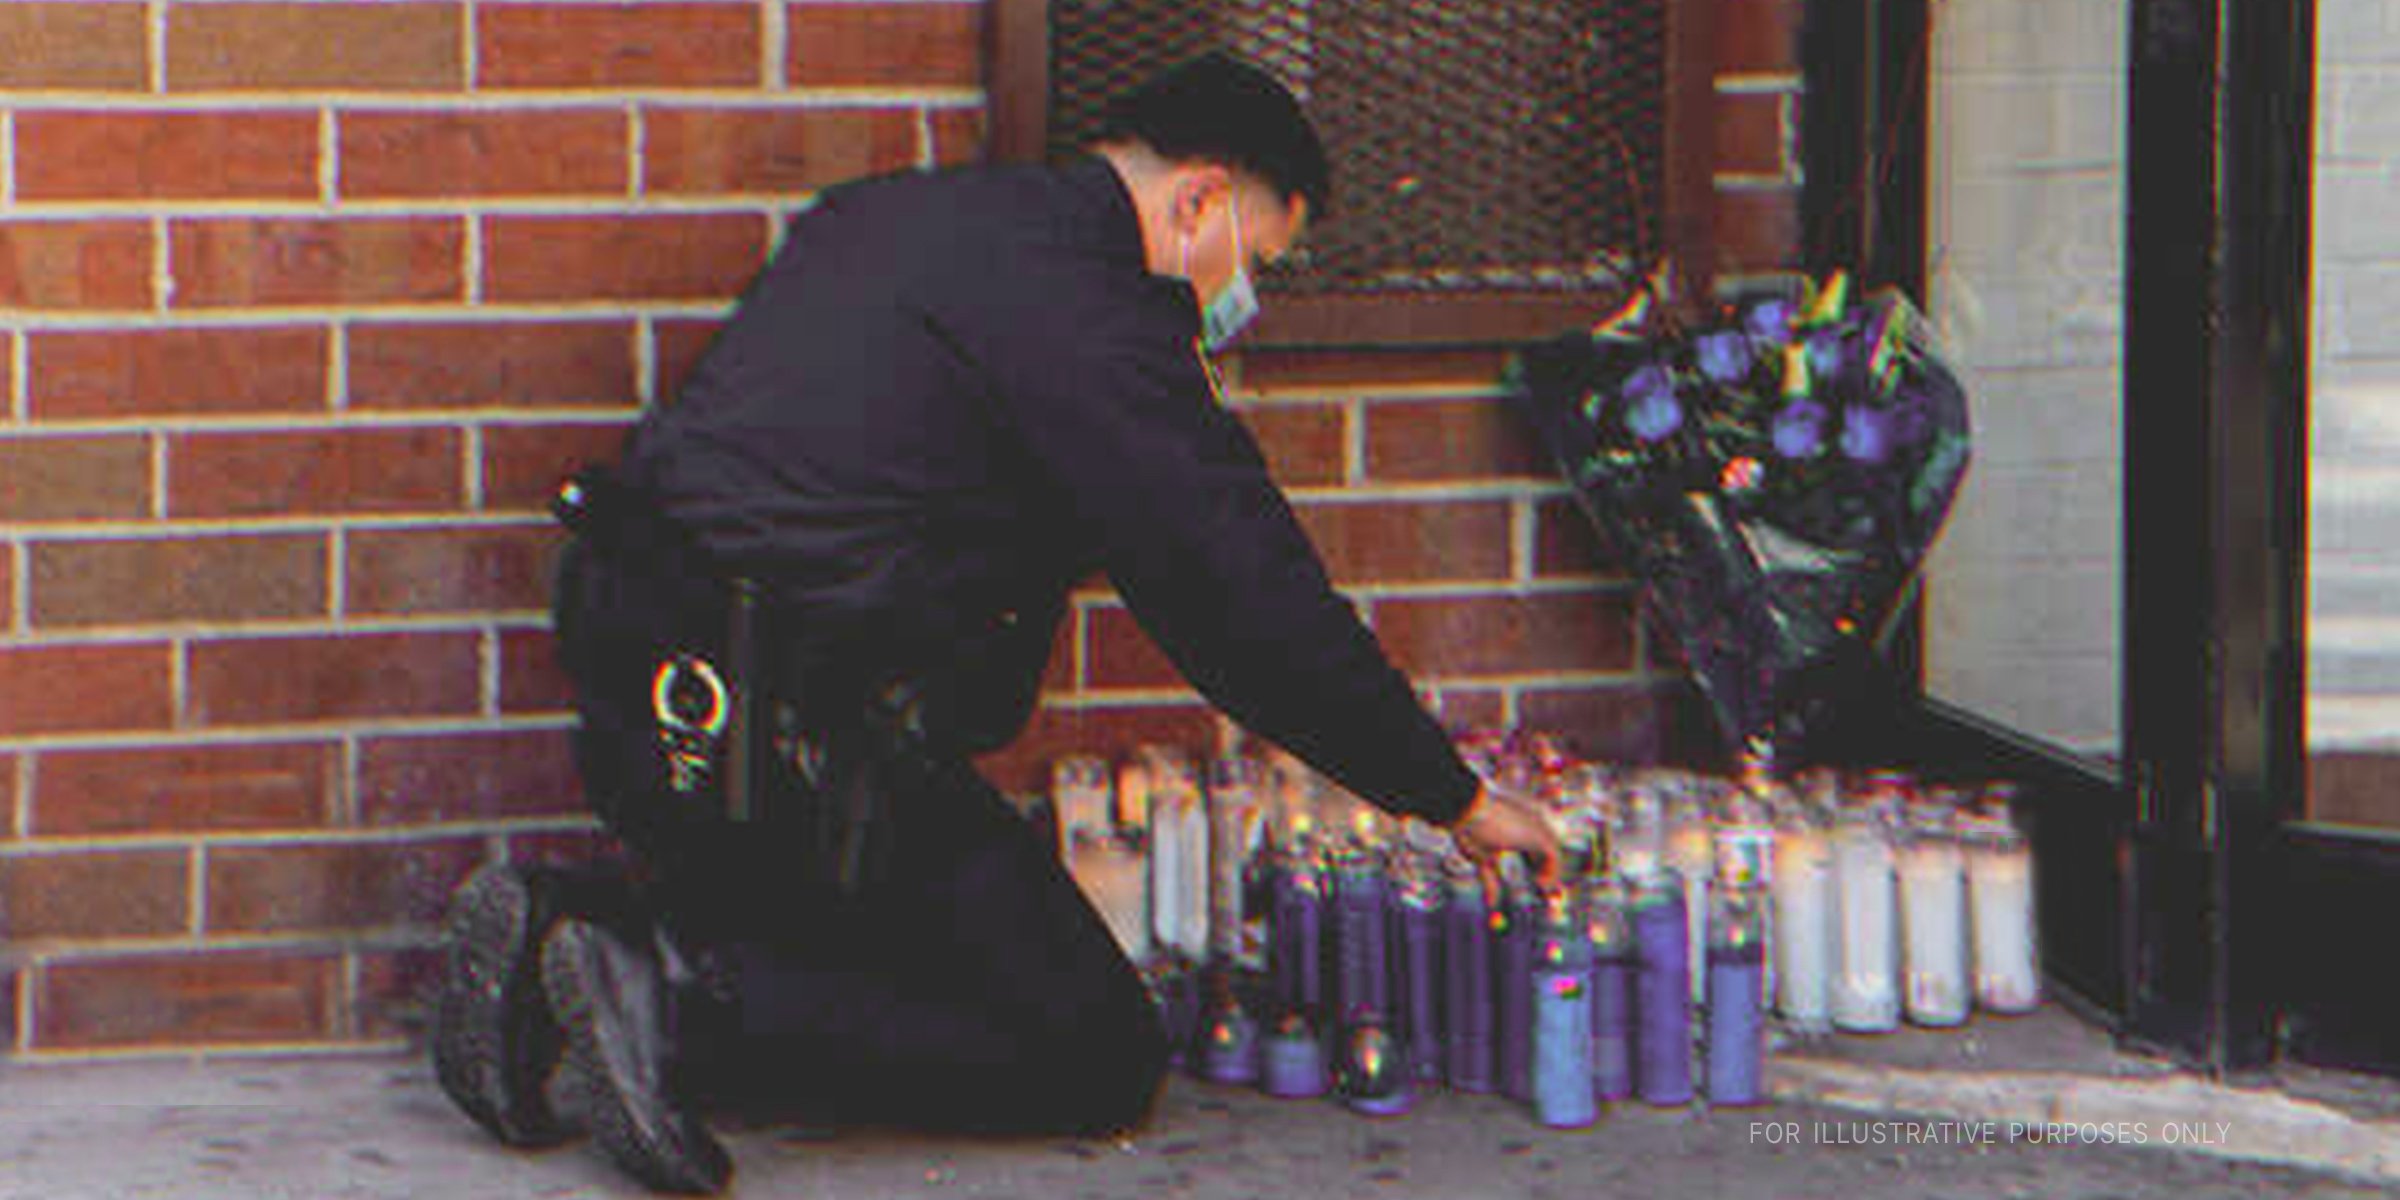 Oficial de la policía encendiendo una vela en un altar improvisado | Foto: Shutterstock